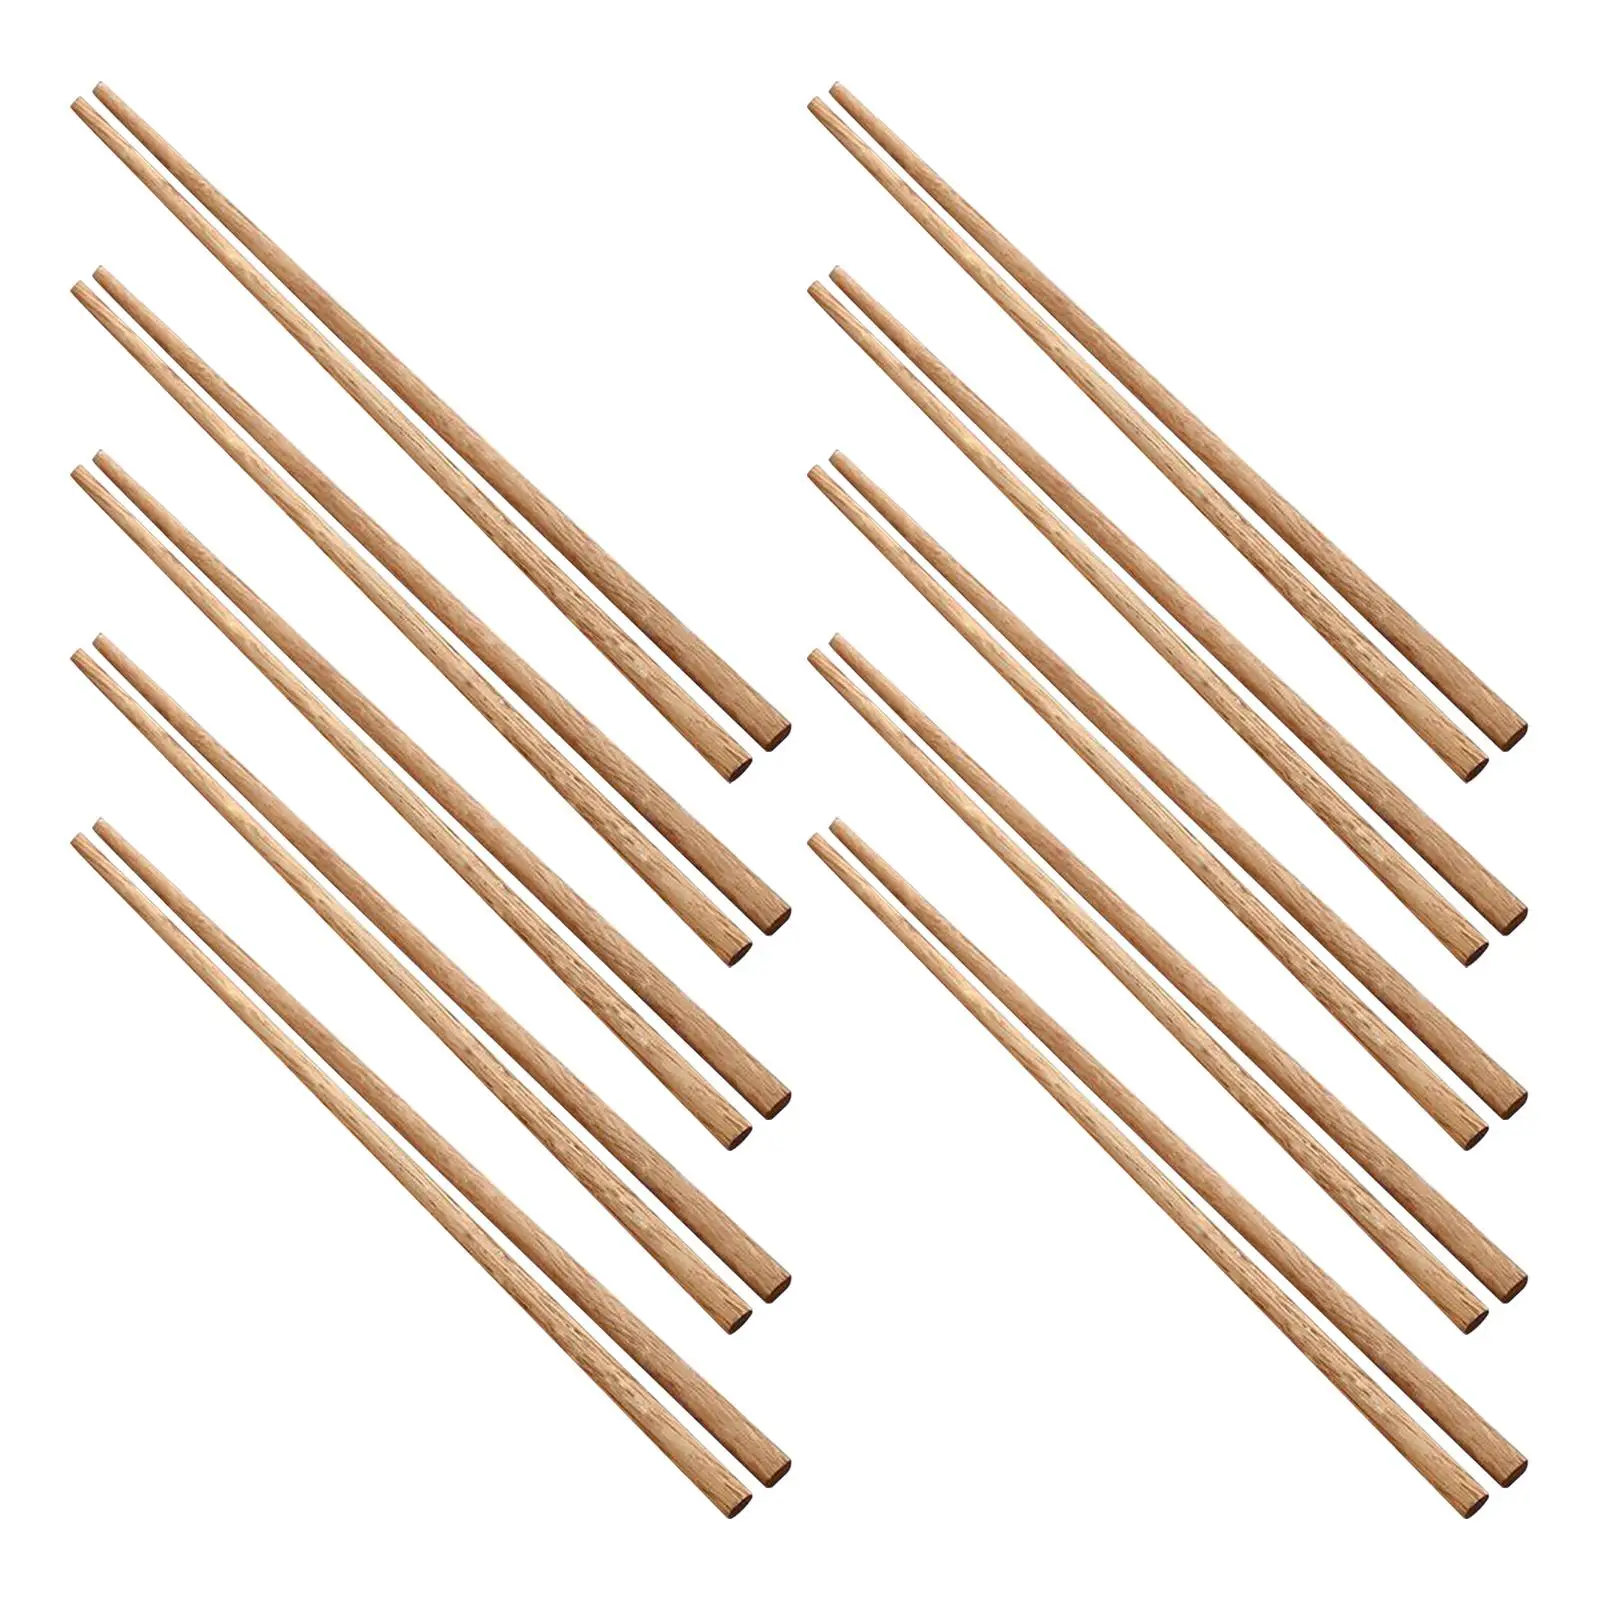 10 Pieces Wood Chopsticks Rustic Nonslip Reusable Dinnerware Utensils Kids Chopstick Set for Ramen Hotel Restaurant Hot Pot